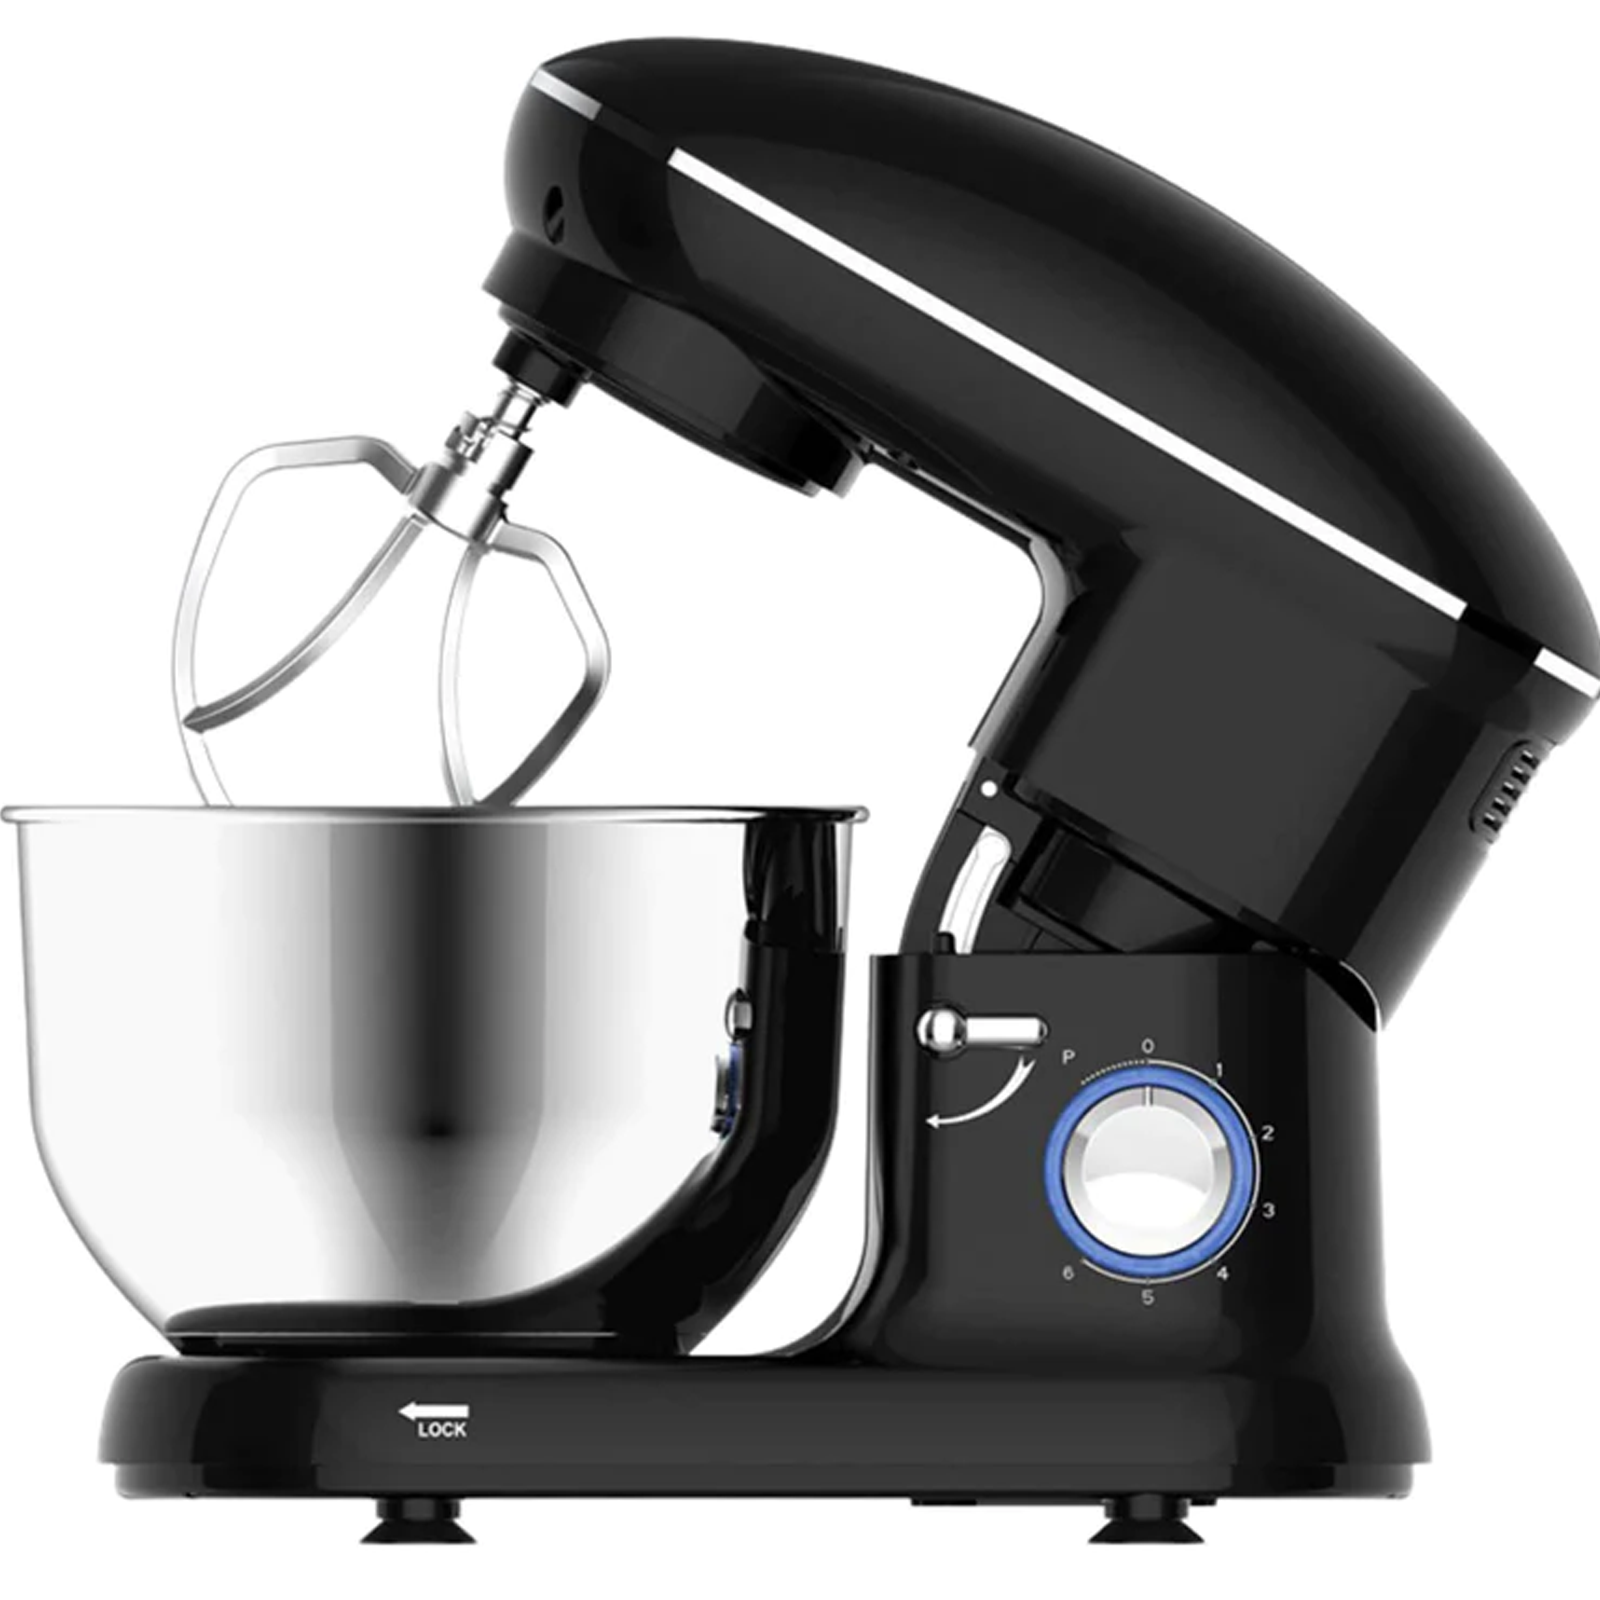 SYNTEK Mixer Leistungsstarker Pastamixer Schwarz Watt) Machine Schneebesen Home Chef Küchenmaschine Black (1500